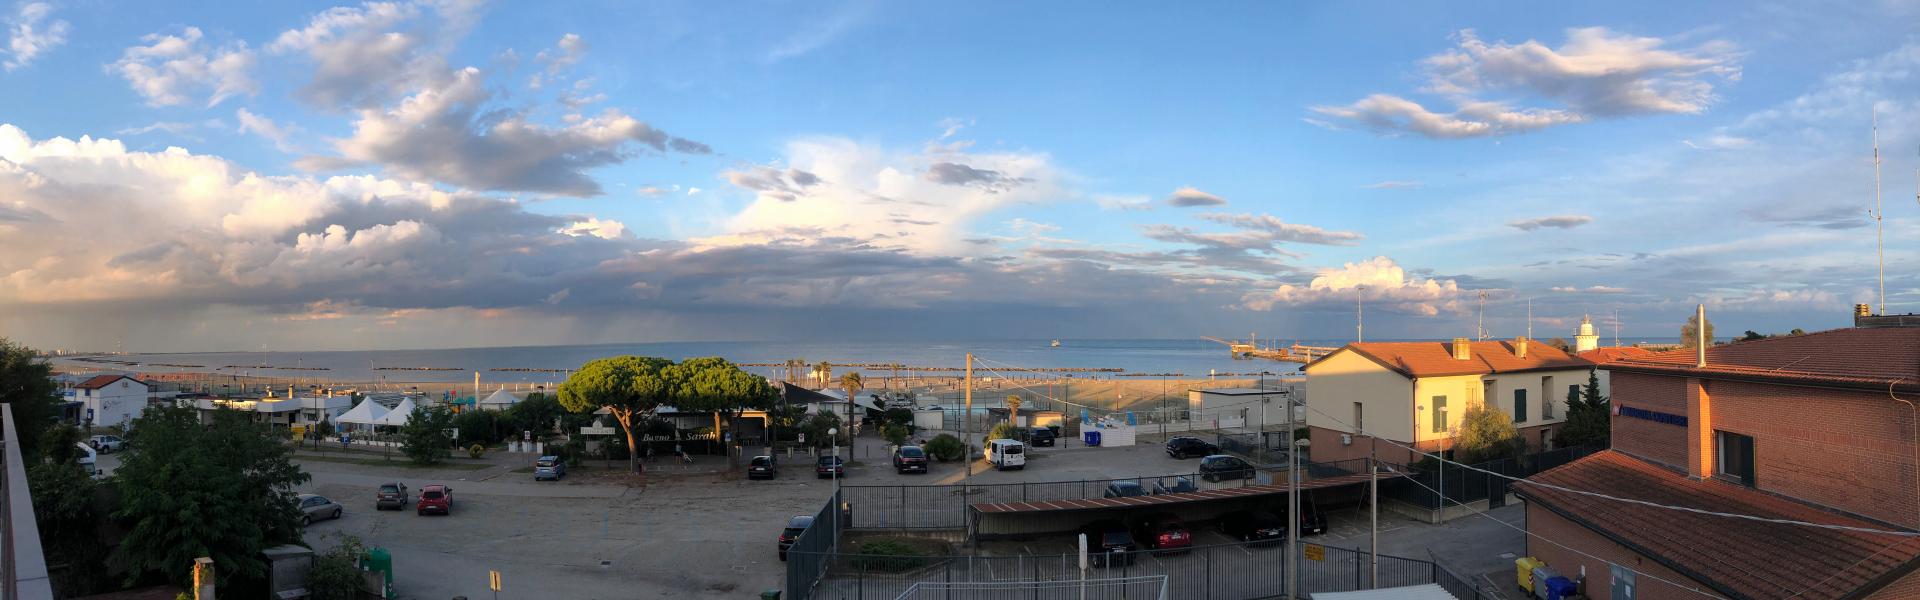 Porto Garibaldi Scenic View